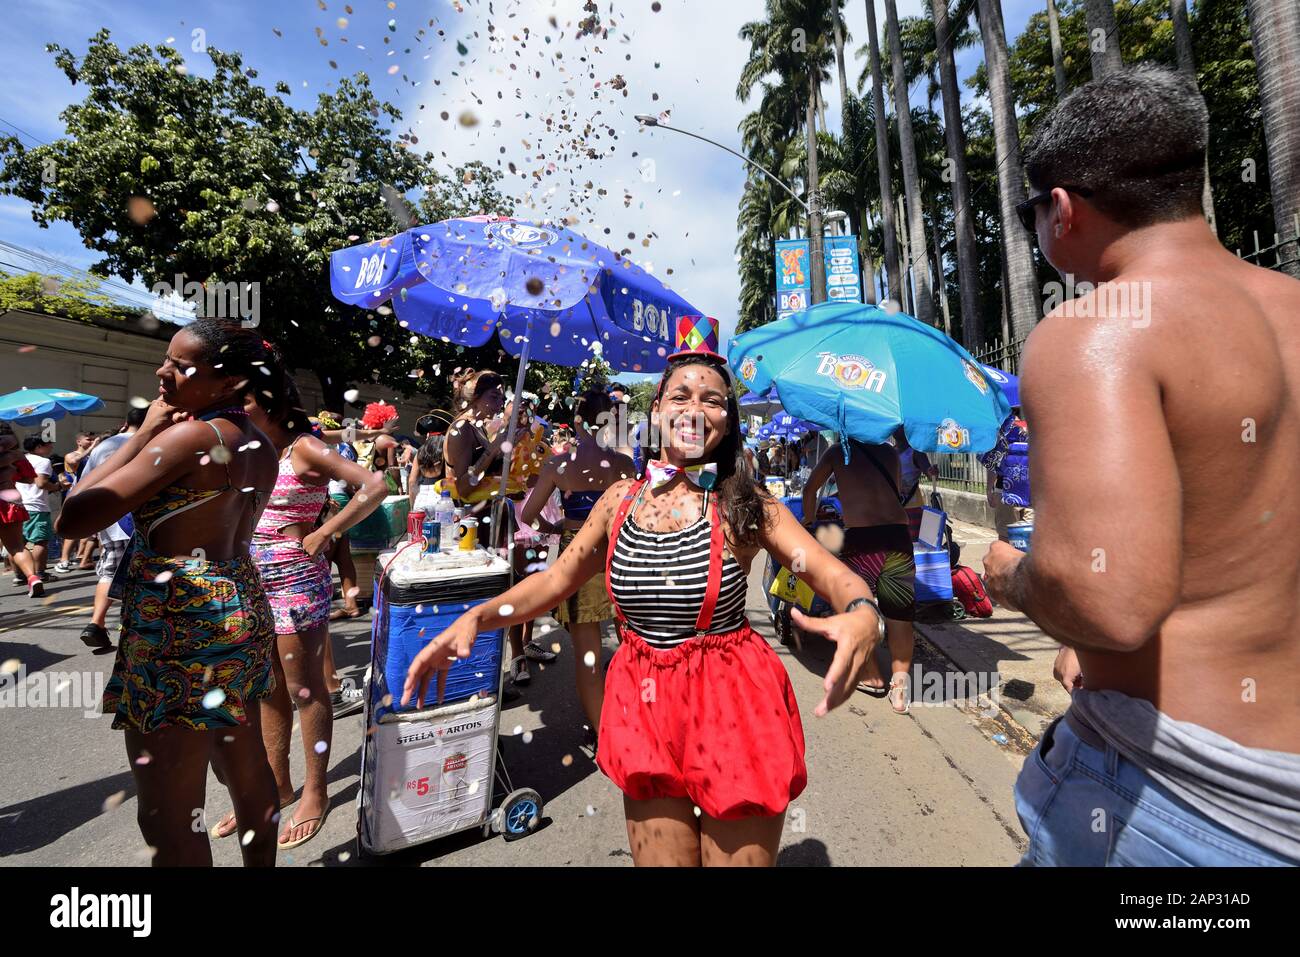 Sud America, Brasile - 5 Marzo 2019: mascherate donna godere il carnevale di strada lanciando coriandoli durante una parata tenutasi a Rio de Janeiro la zona sud. Foto Stock